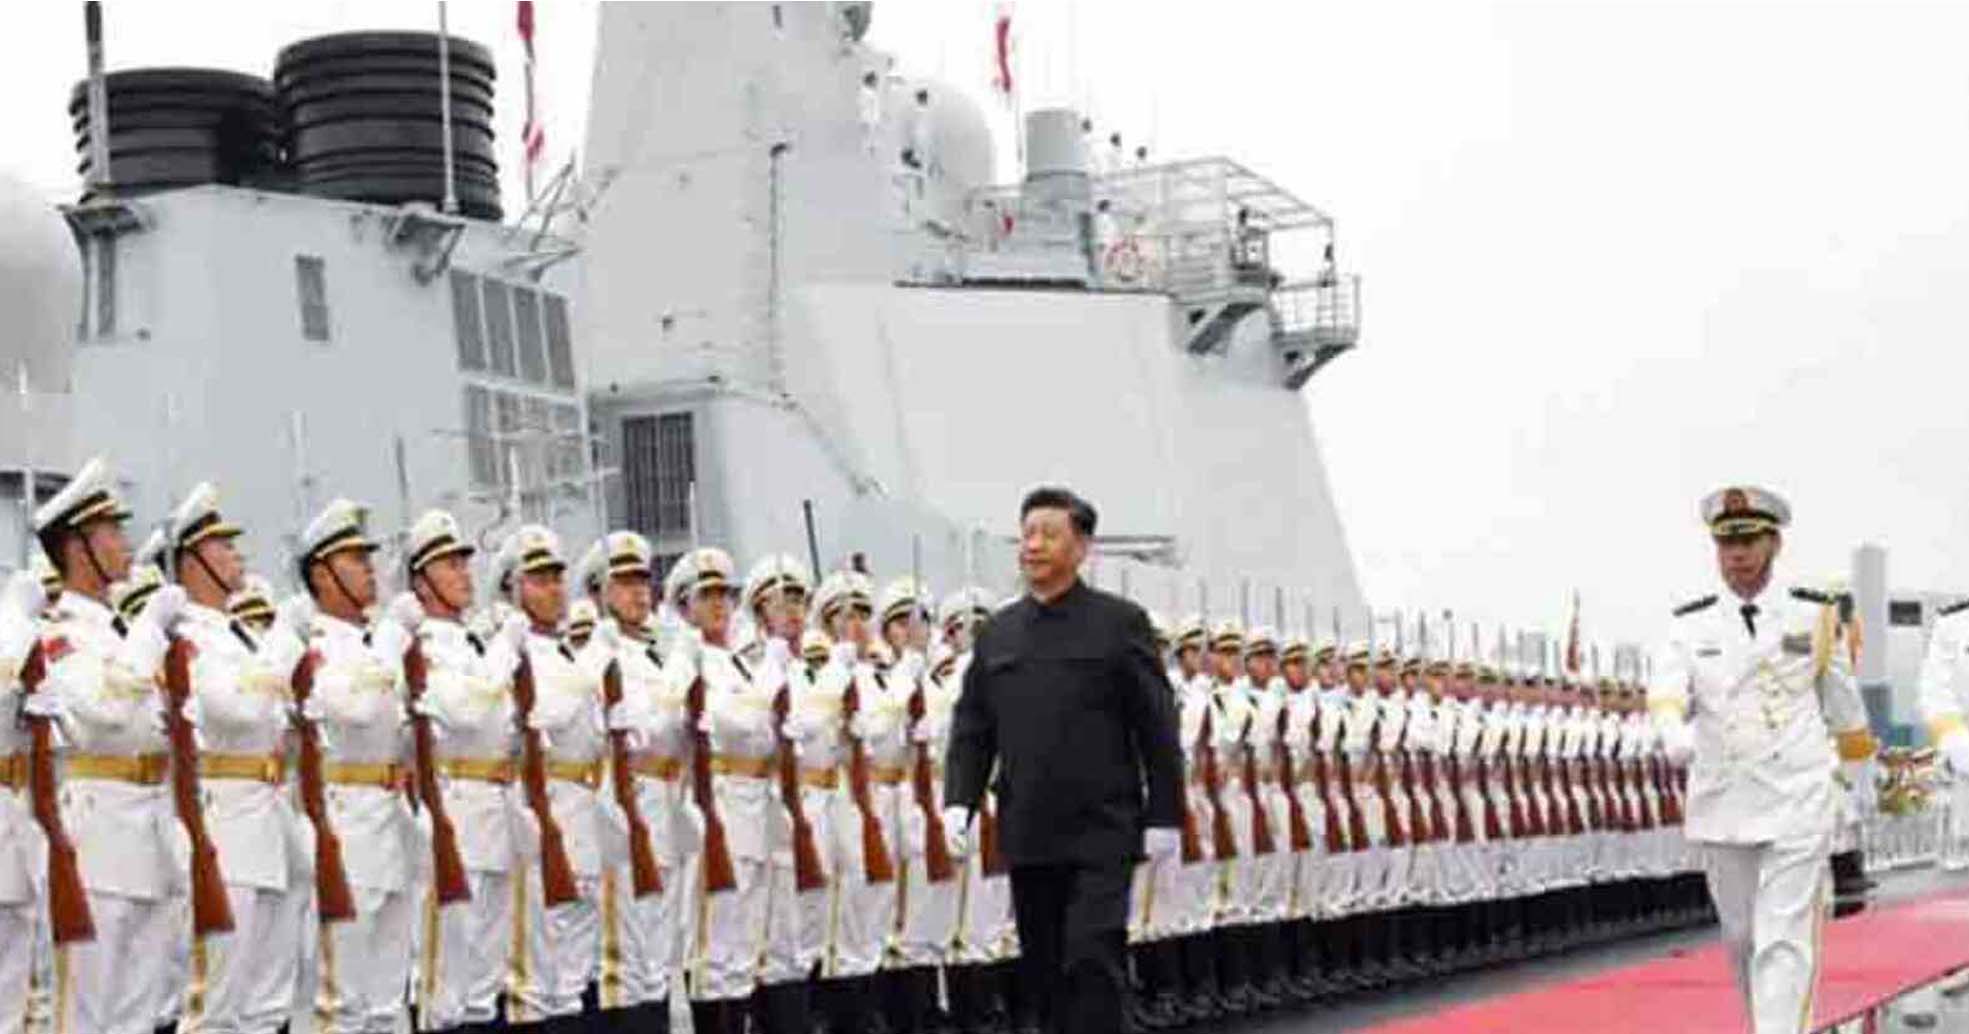 समुद्र में अब चीन सबसे ताकतवर, अमेरिकी नौसेना से आगे निकला